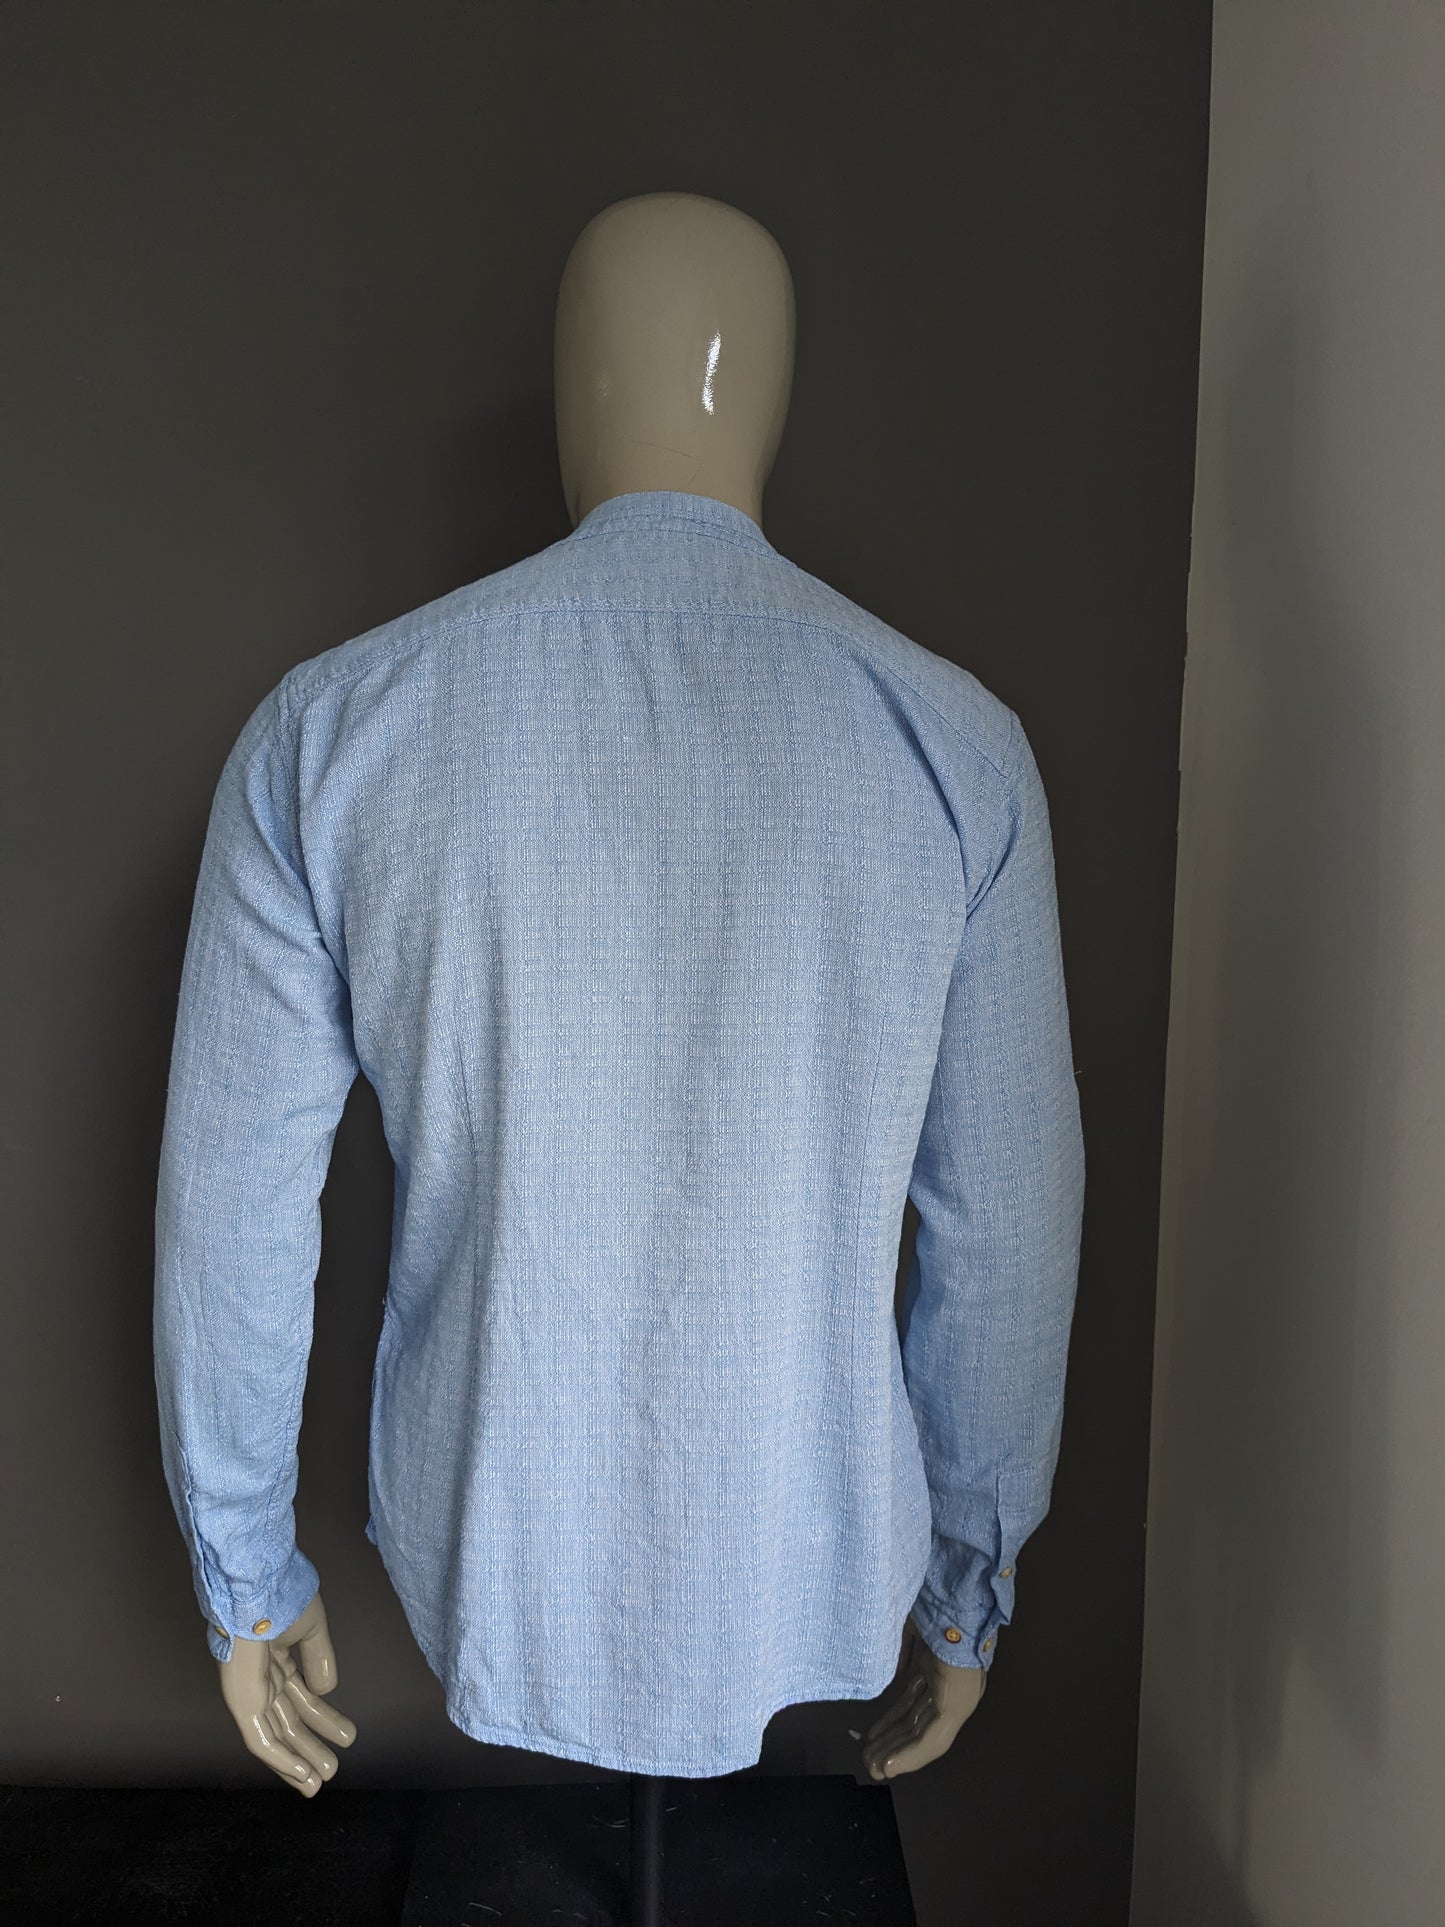 Camisa de smog con mao / granjeros / cuello vertical. Azul mezclado. Tamaño L. Fit Slim.